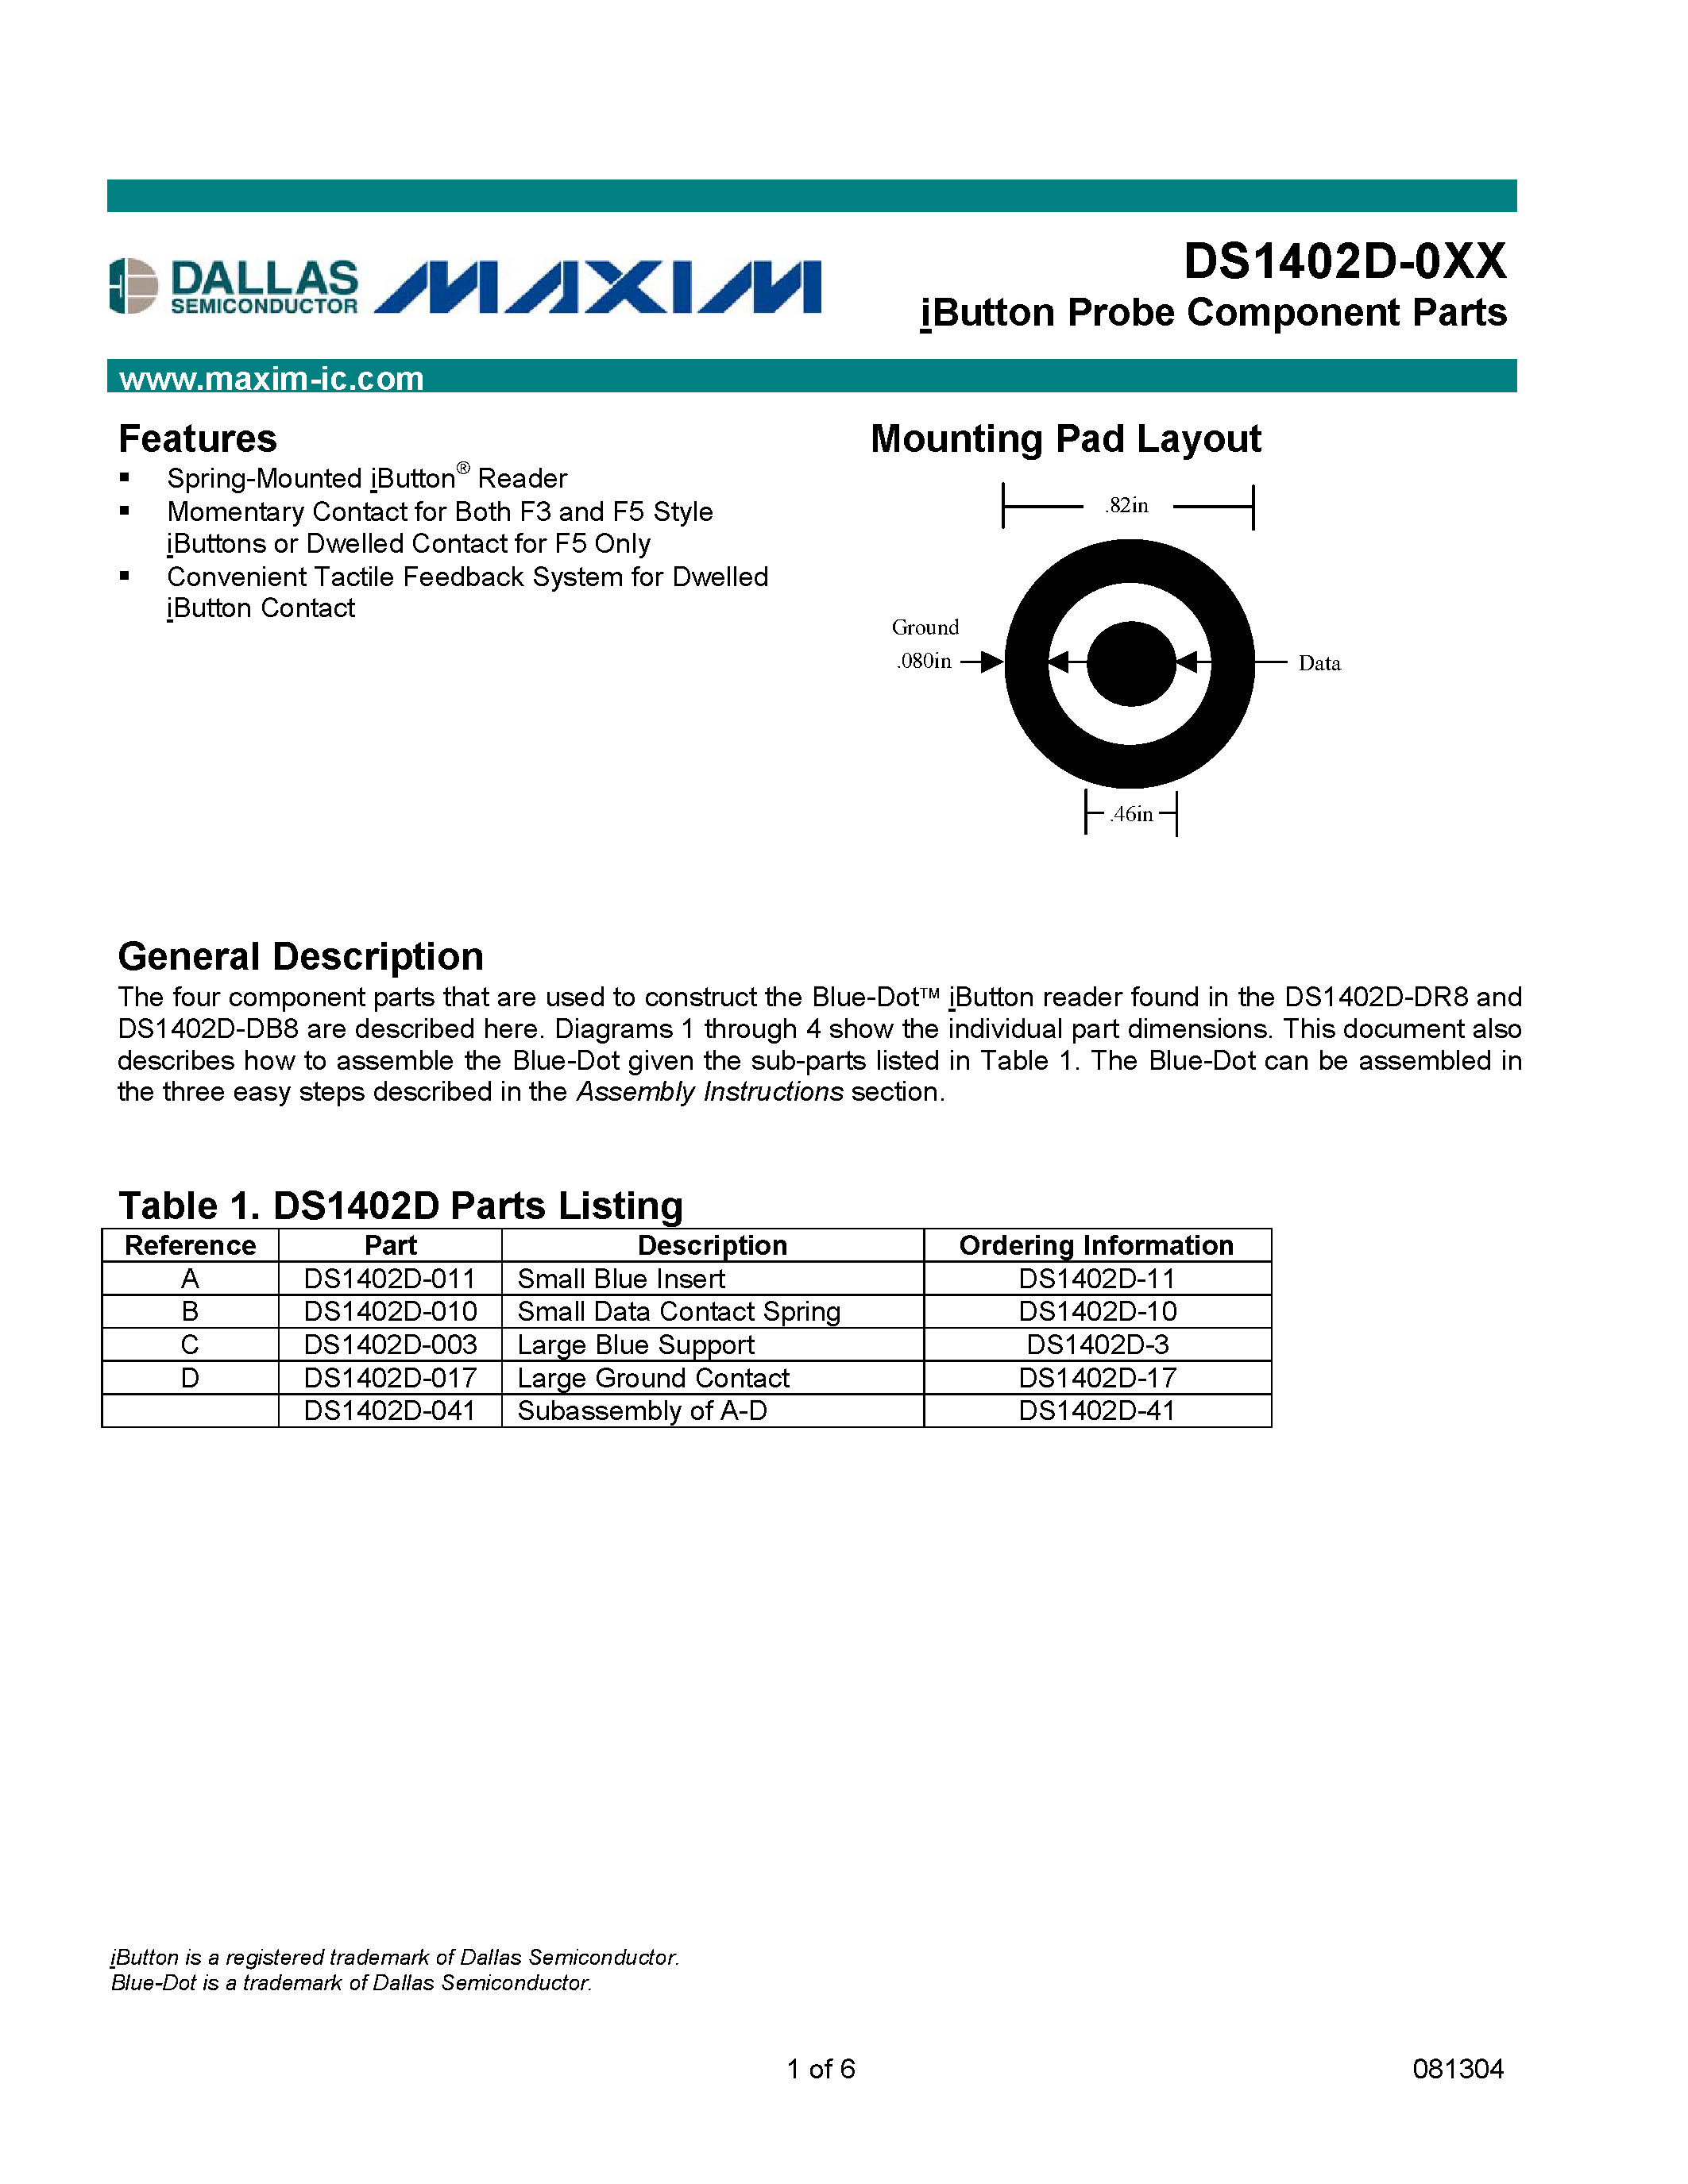 Даташит DS1402D-011 - iButton Probe Component Parts страница 1